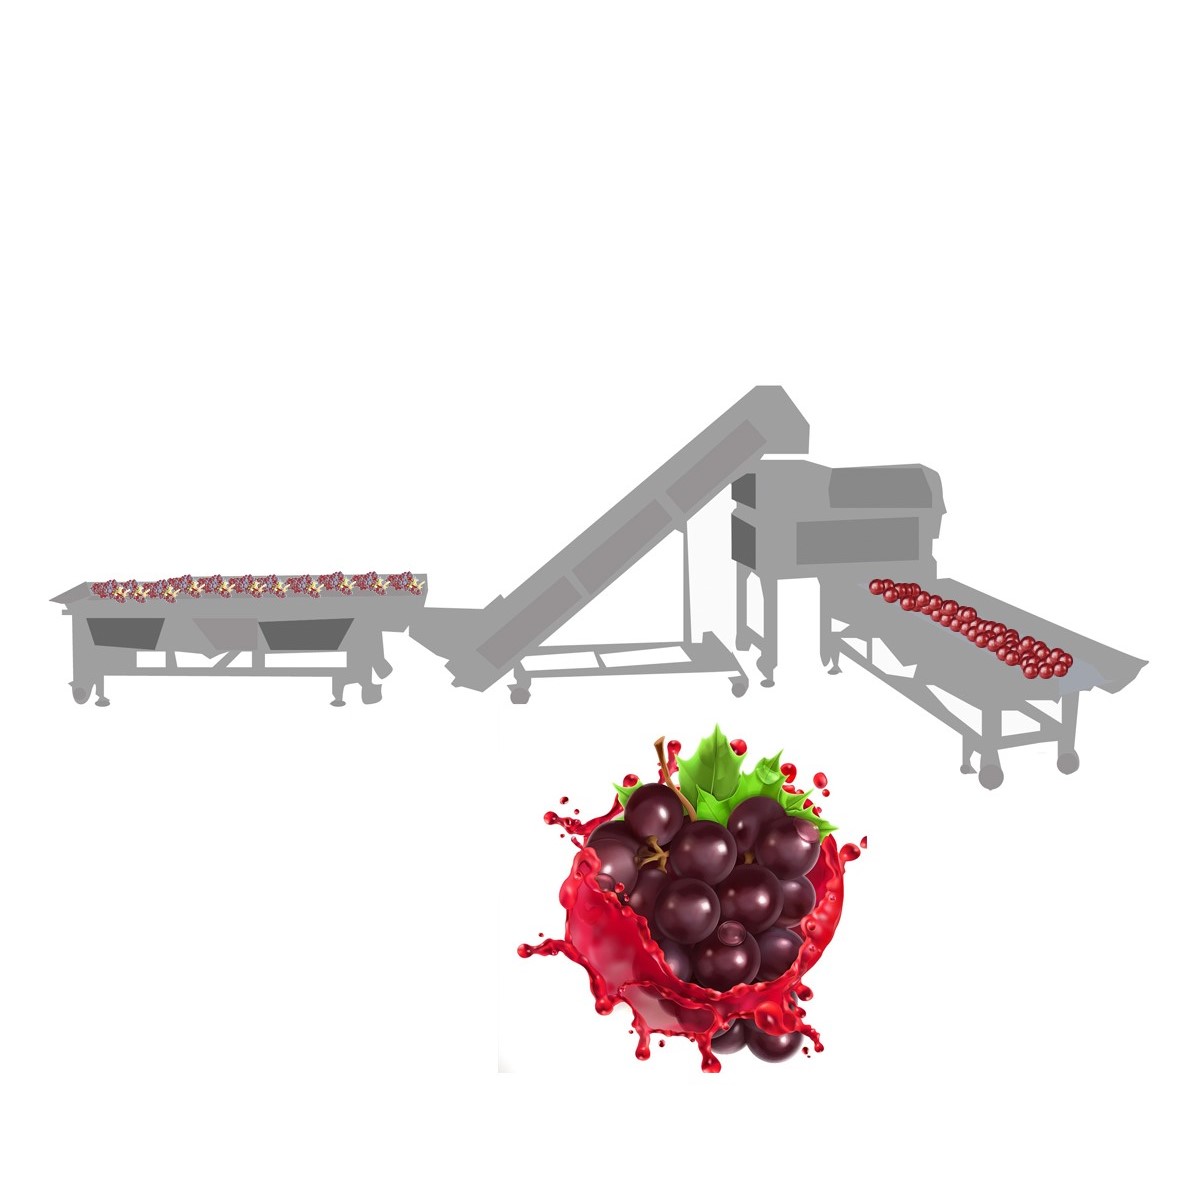 Planta de procesamiento de uva